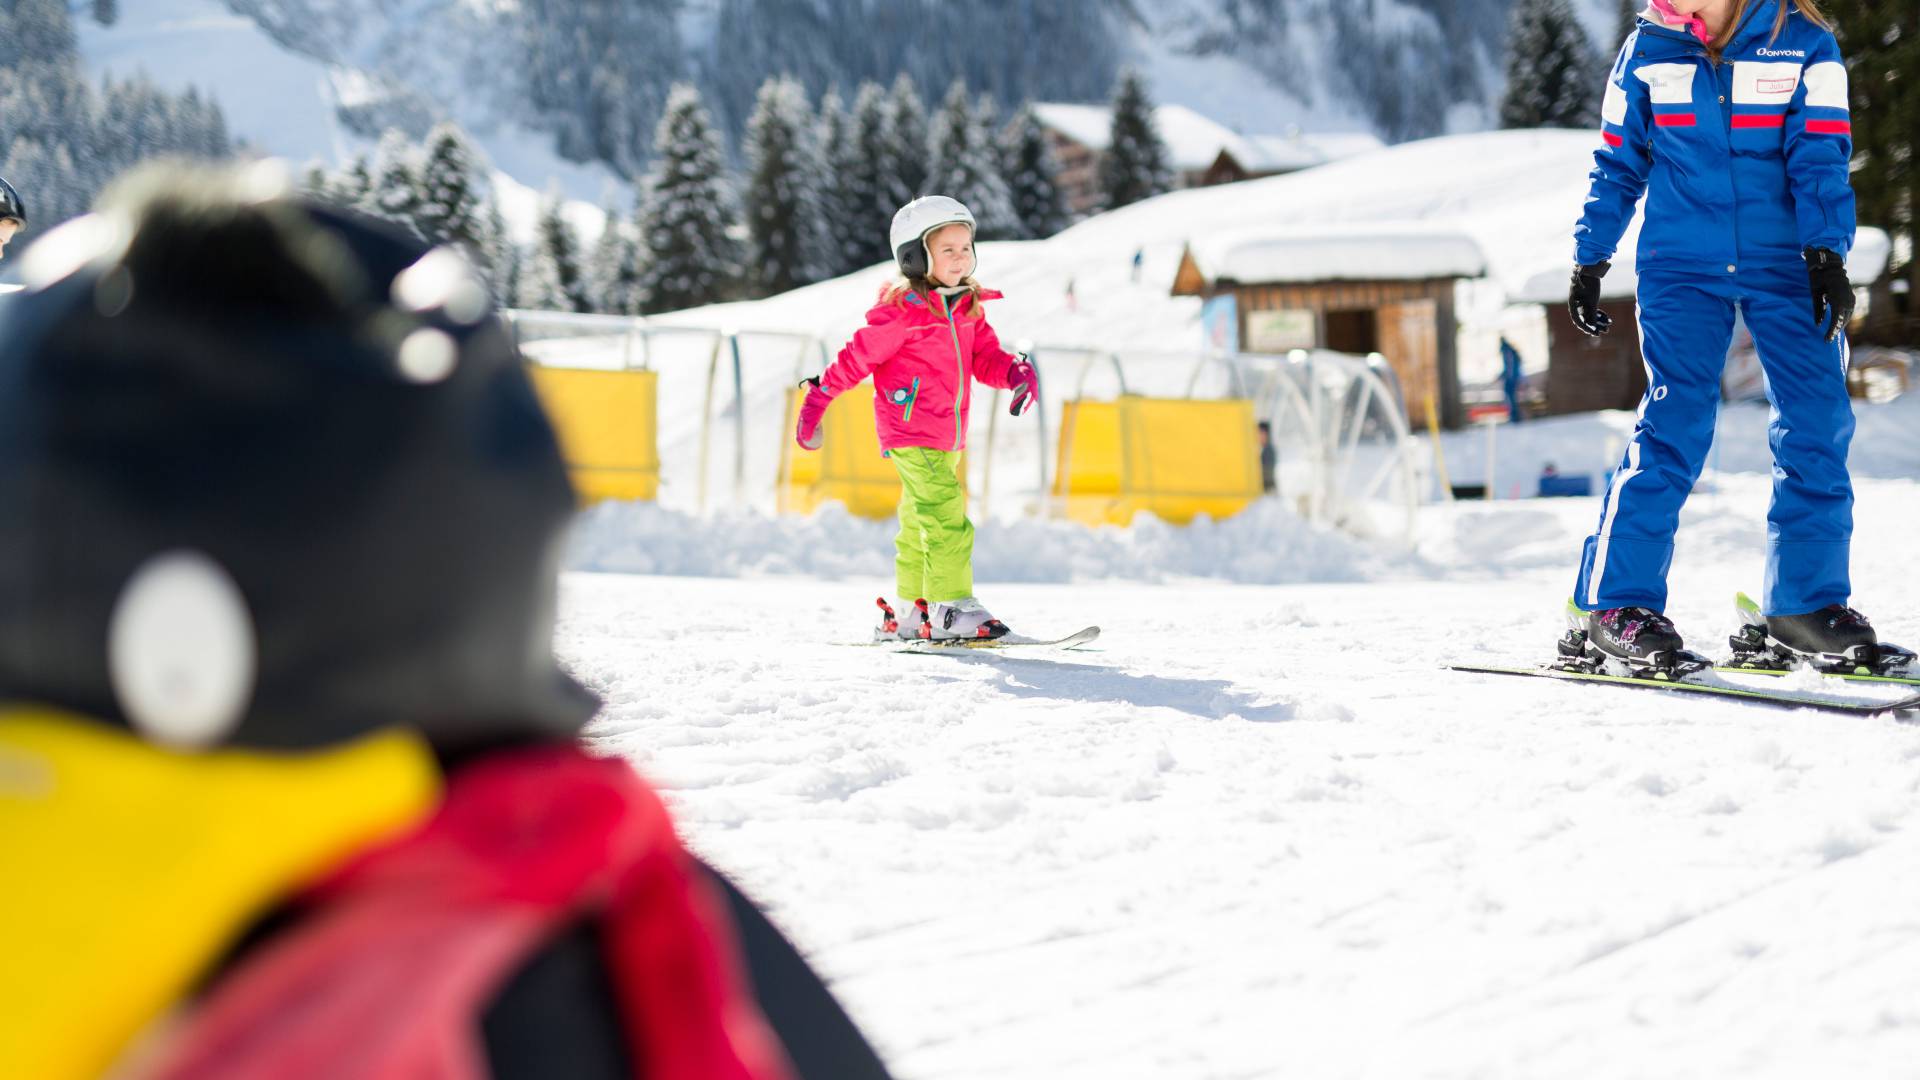 Kind in der Kinderskischule mit freundlichem Skilehrer